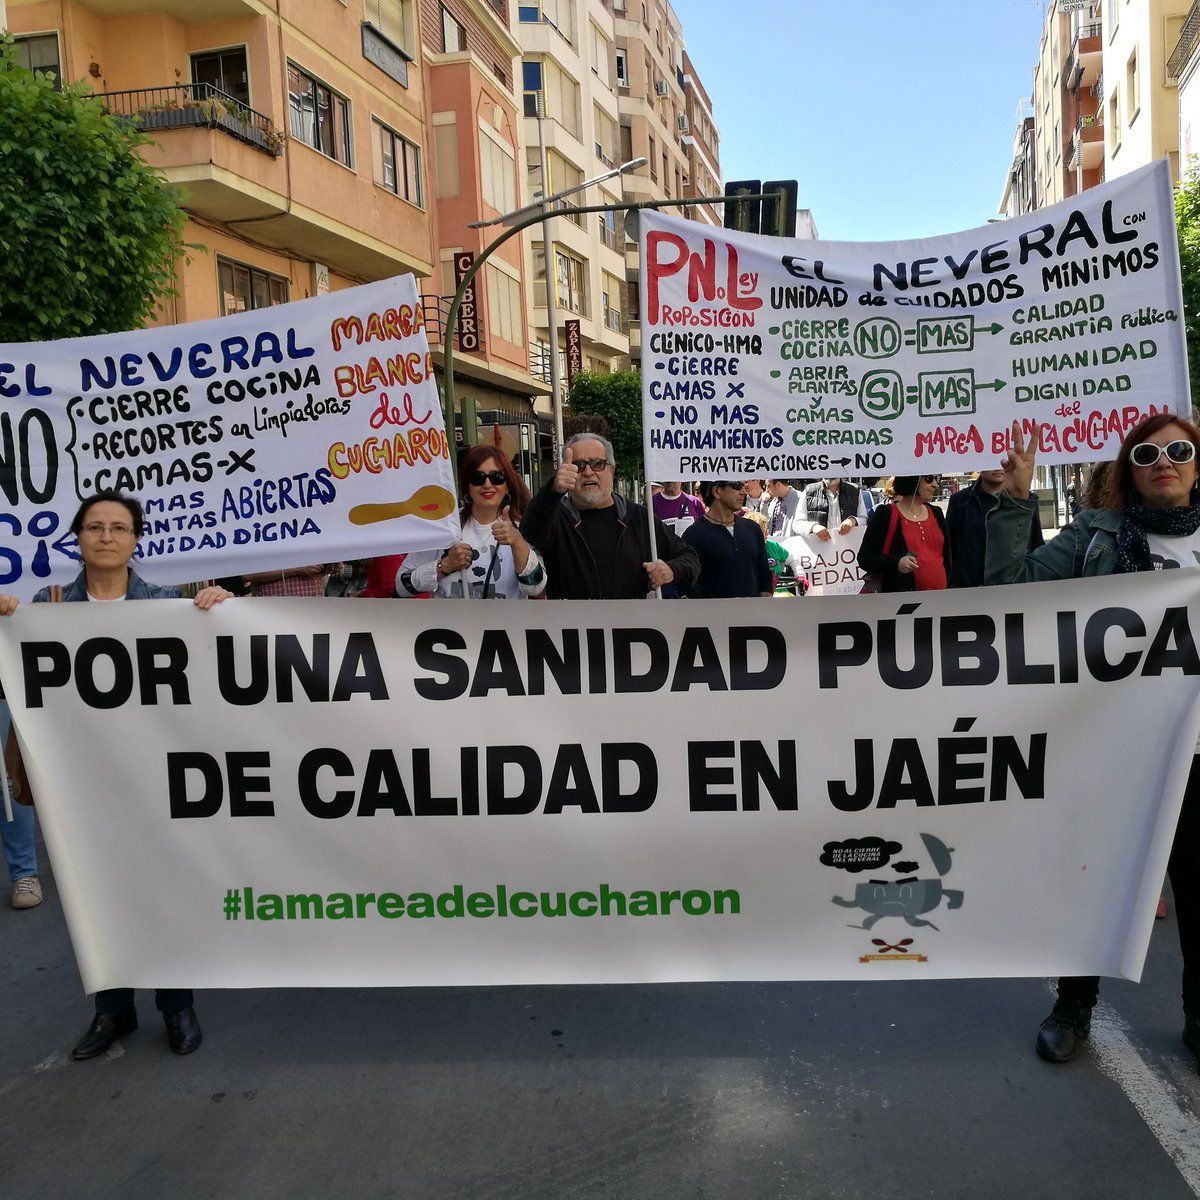 Crónica del día: Dos obsesiones del momento en Jaén: la política y la sequía